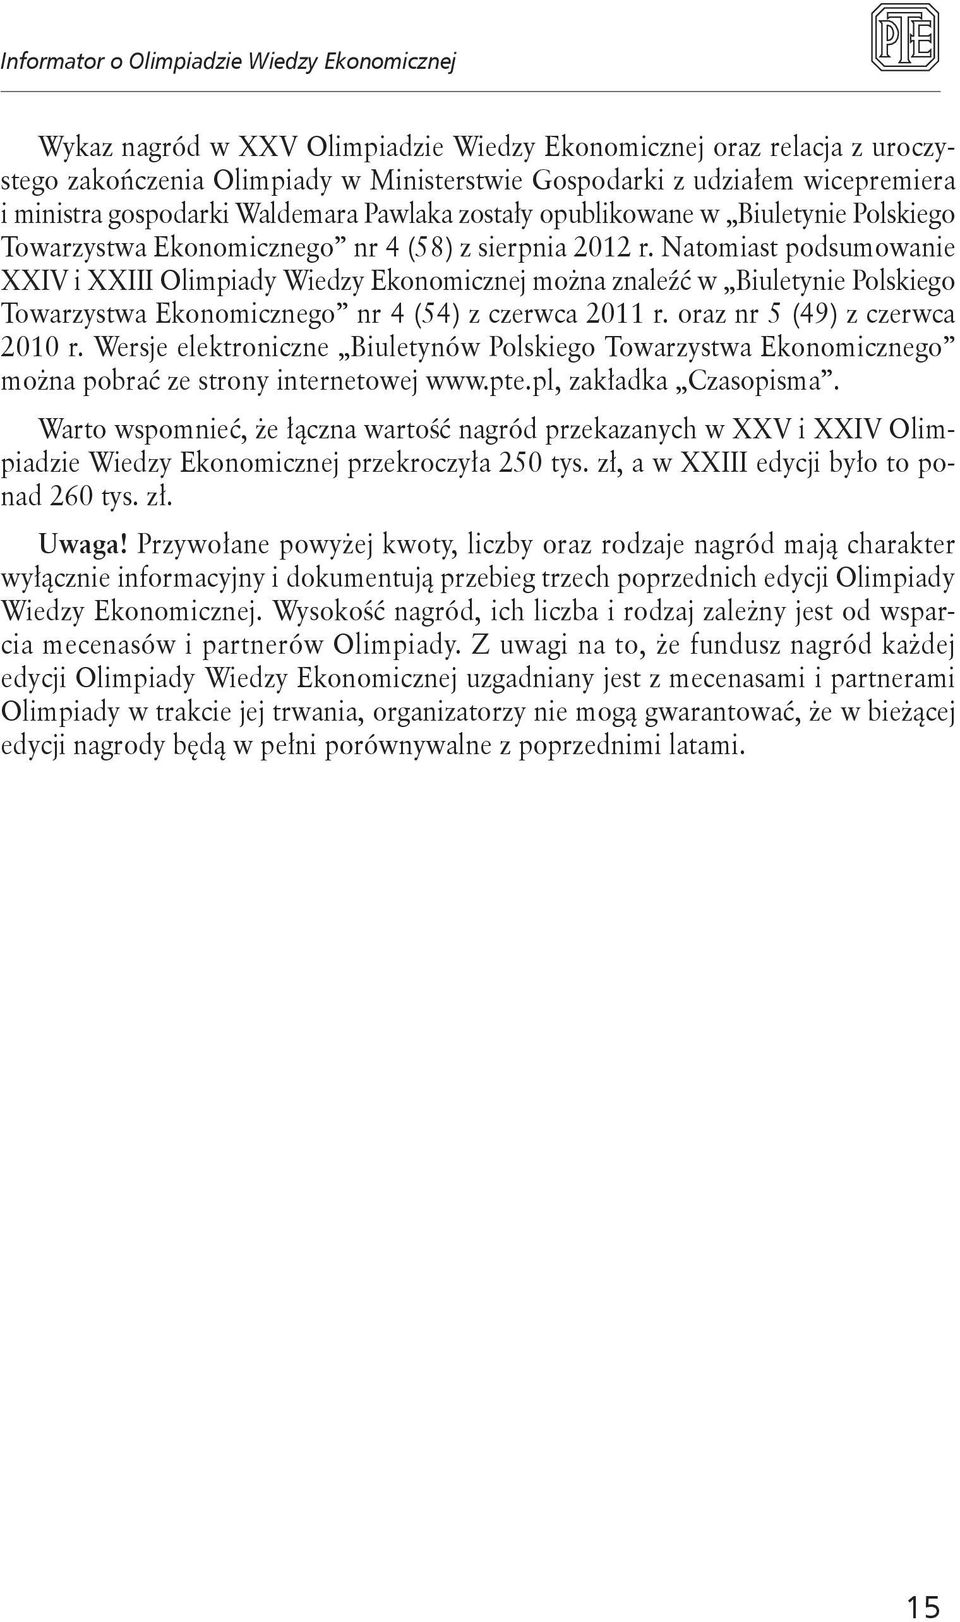 Natomiast podsumowanie XXIV i XXIII Olimpiady Wiedzy Ekonomicznej można znaleźć w Biuletynie Polskiego Towarzystwa Ekonomicznego nr 4 (54) z czerwca 2011 r. oraz nr 5 (49) z czerwca 2010 r.